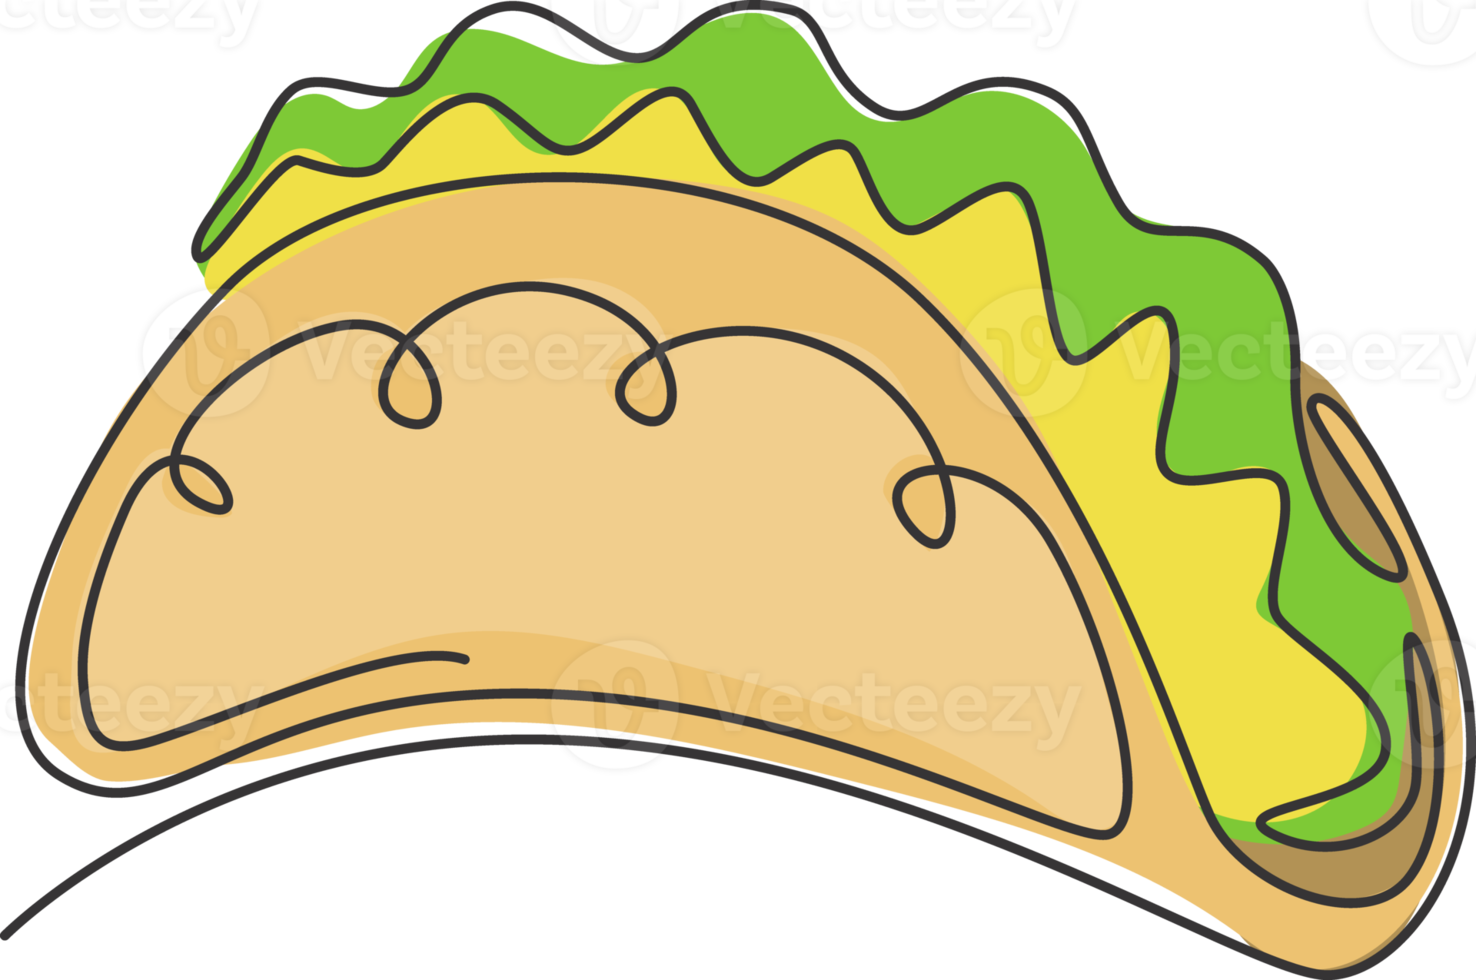 disegno a linea continua singola dell'etichetta del logo stilizzato dei tacos messicani. emblema fast food nacho ristorante concetto. illustrazione vettoriale moderna con disegno a una linea per servizio di consegna di bar, negozi o cibo png